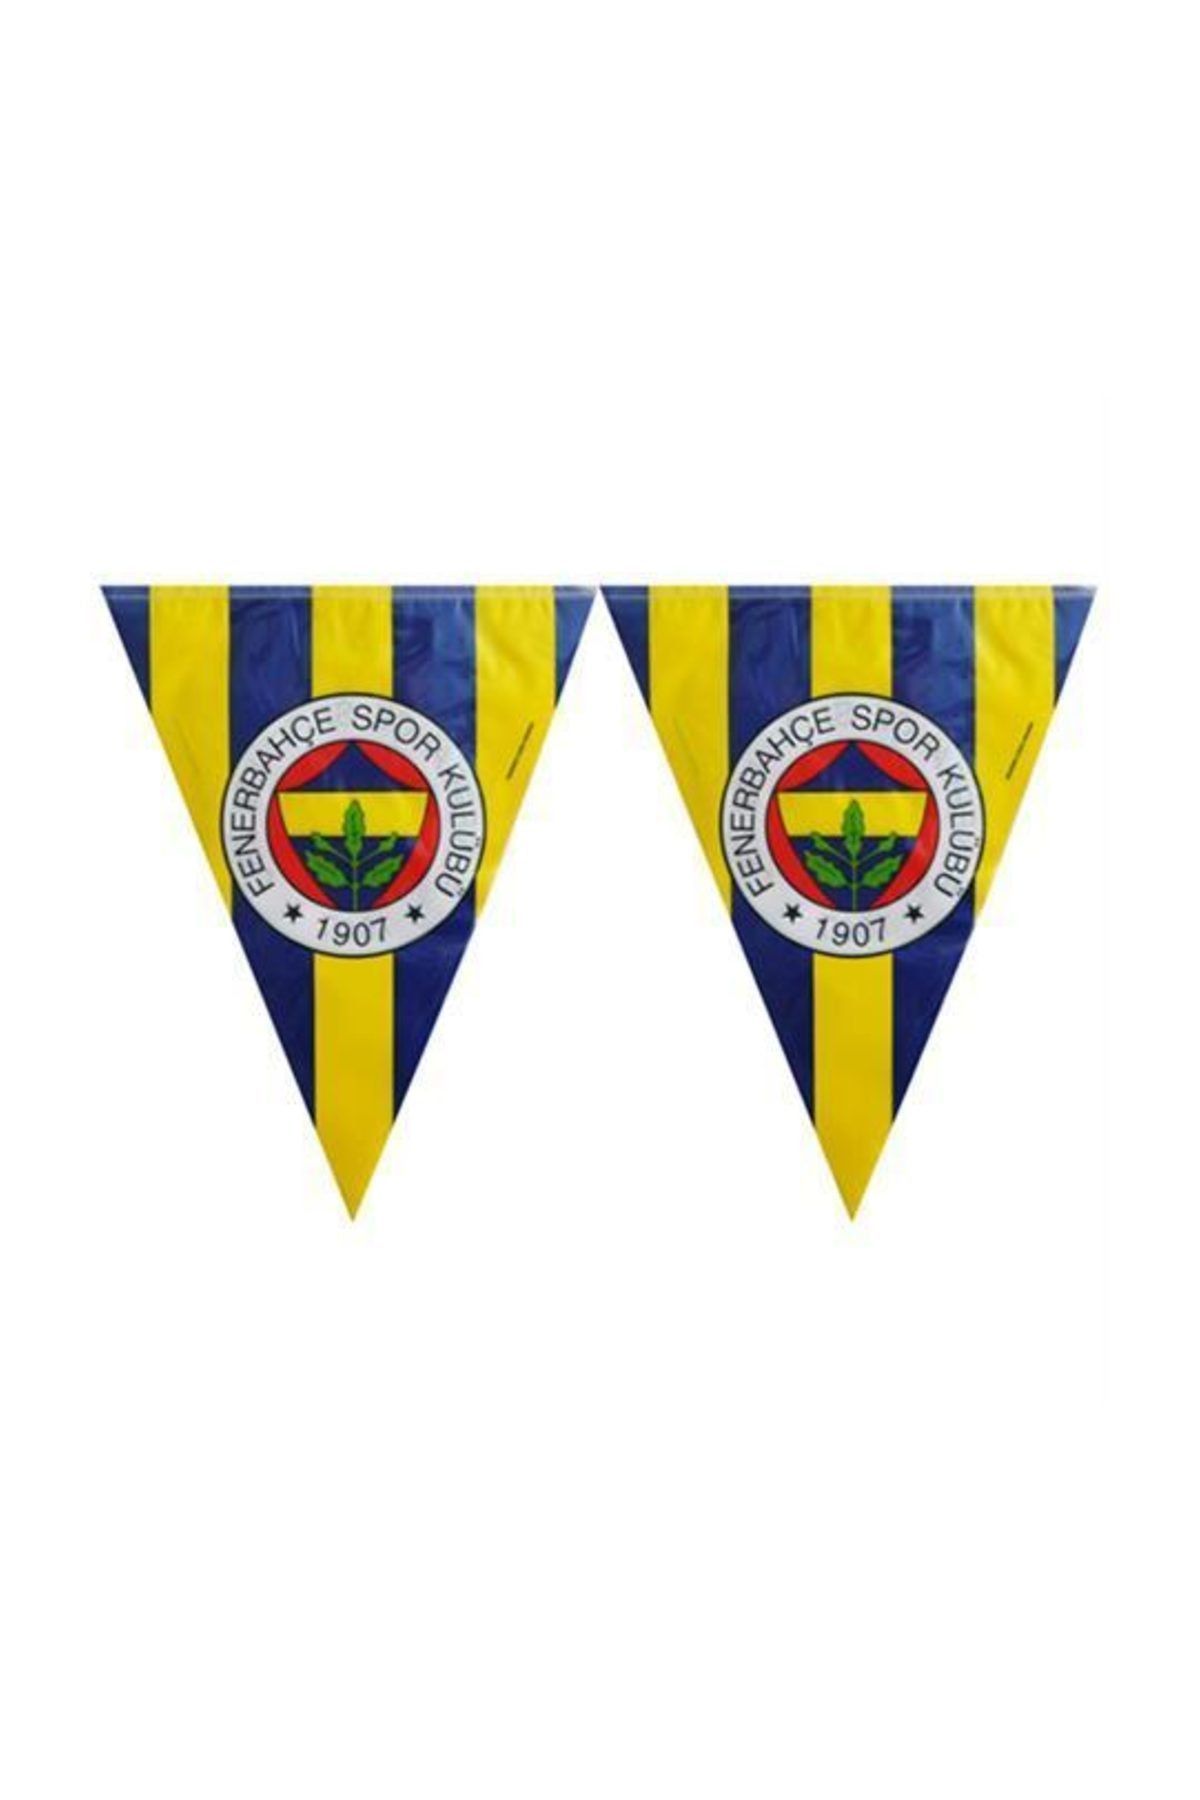 Fenerbahçe 11 Bayraklı Fenerbahçe Flama 3.20mt Doğum Günü parti Malzemesi